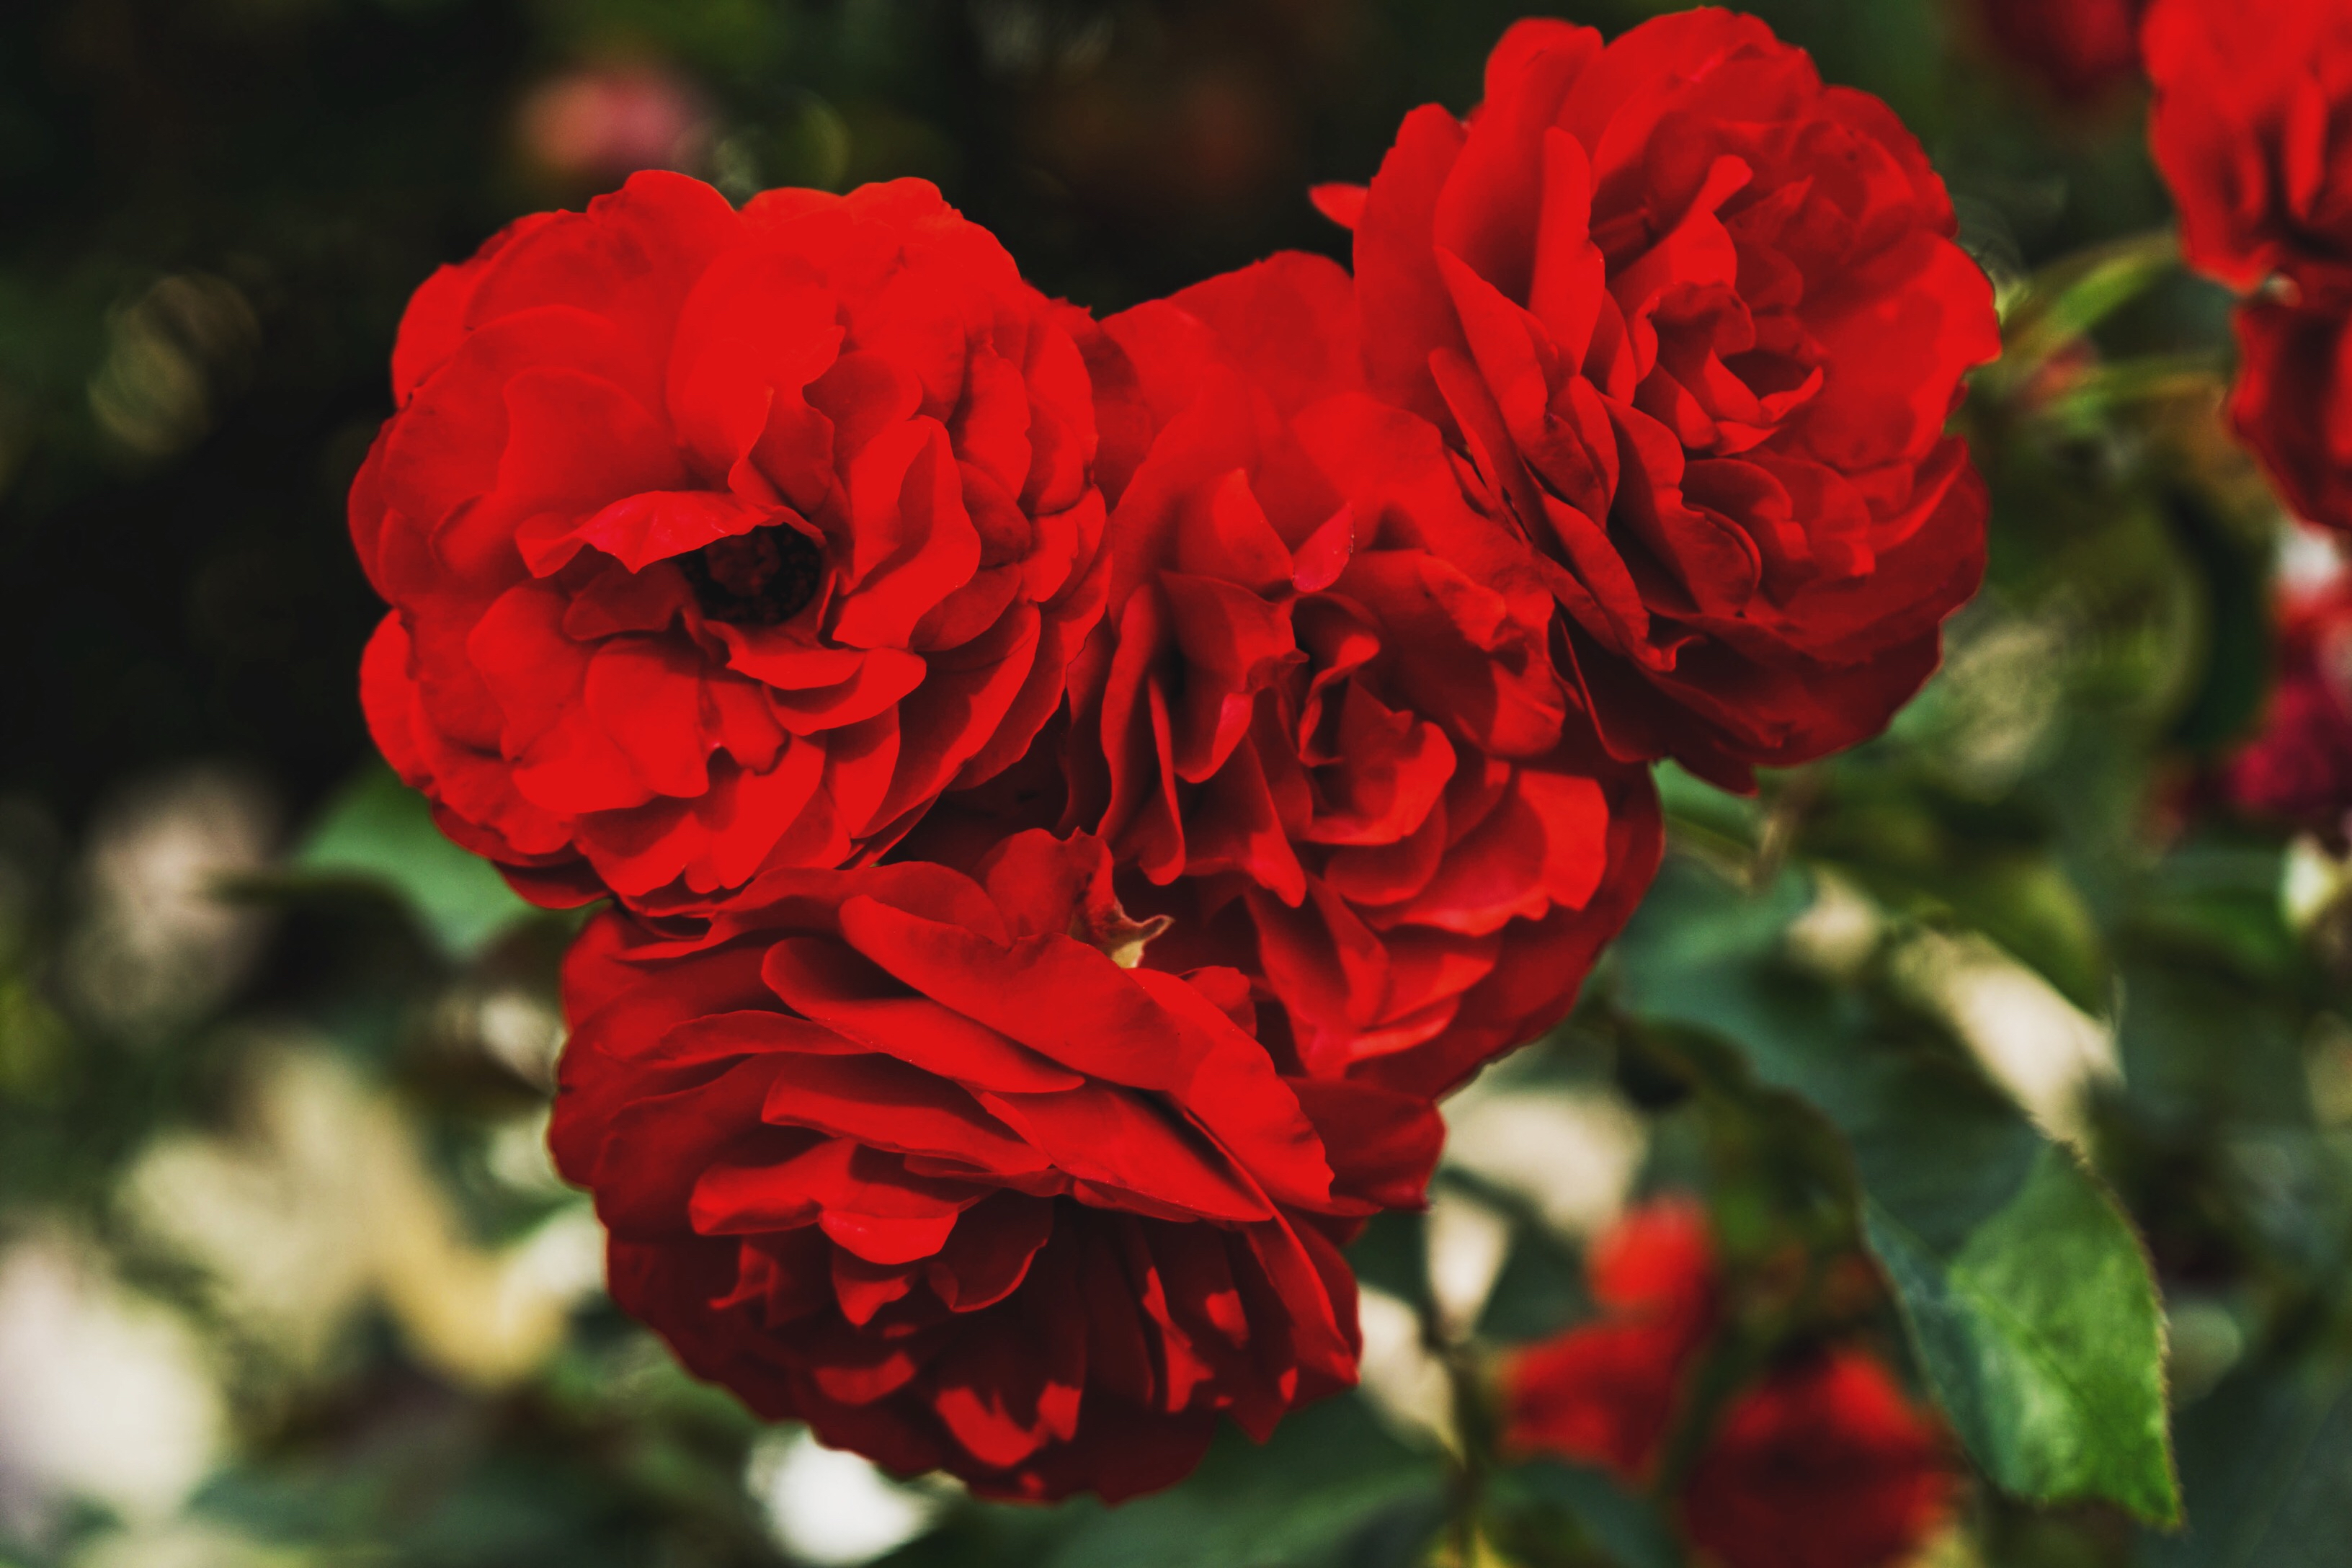 Скачать обои Красные Розы на телефон бесплатно